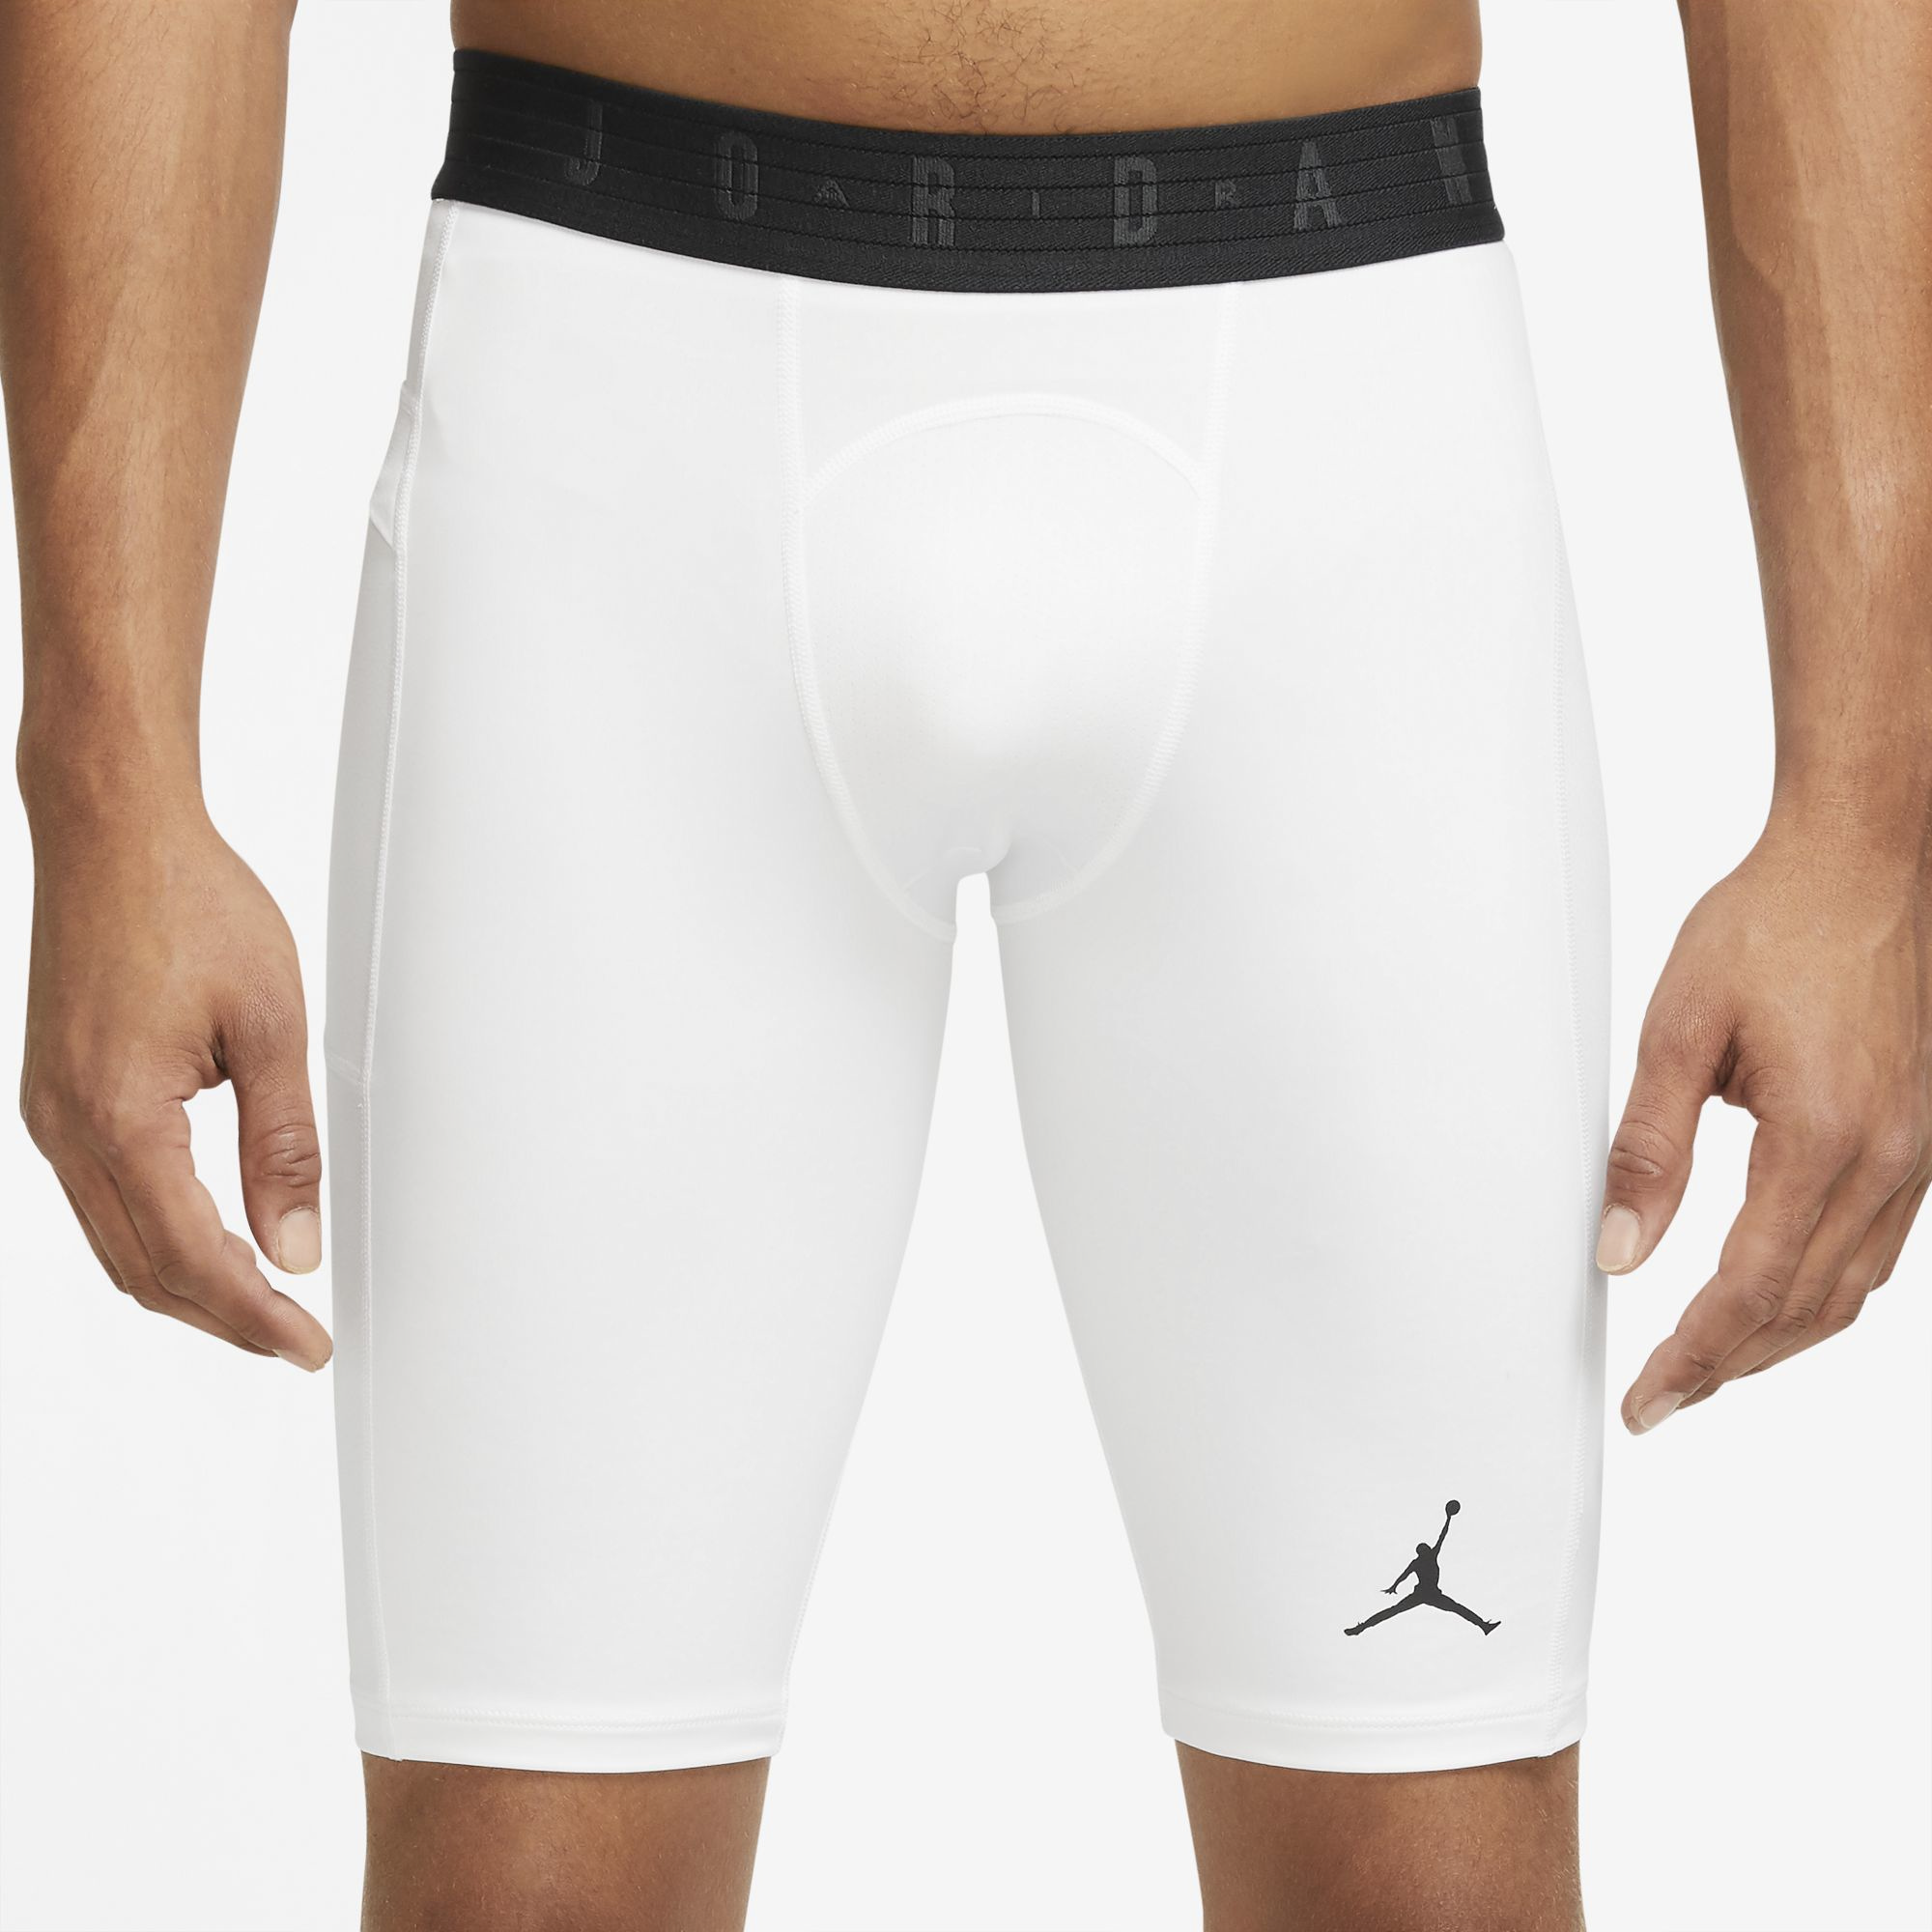 air jordan compression shorts